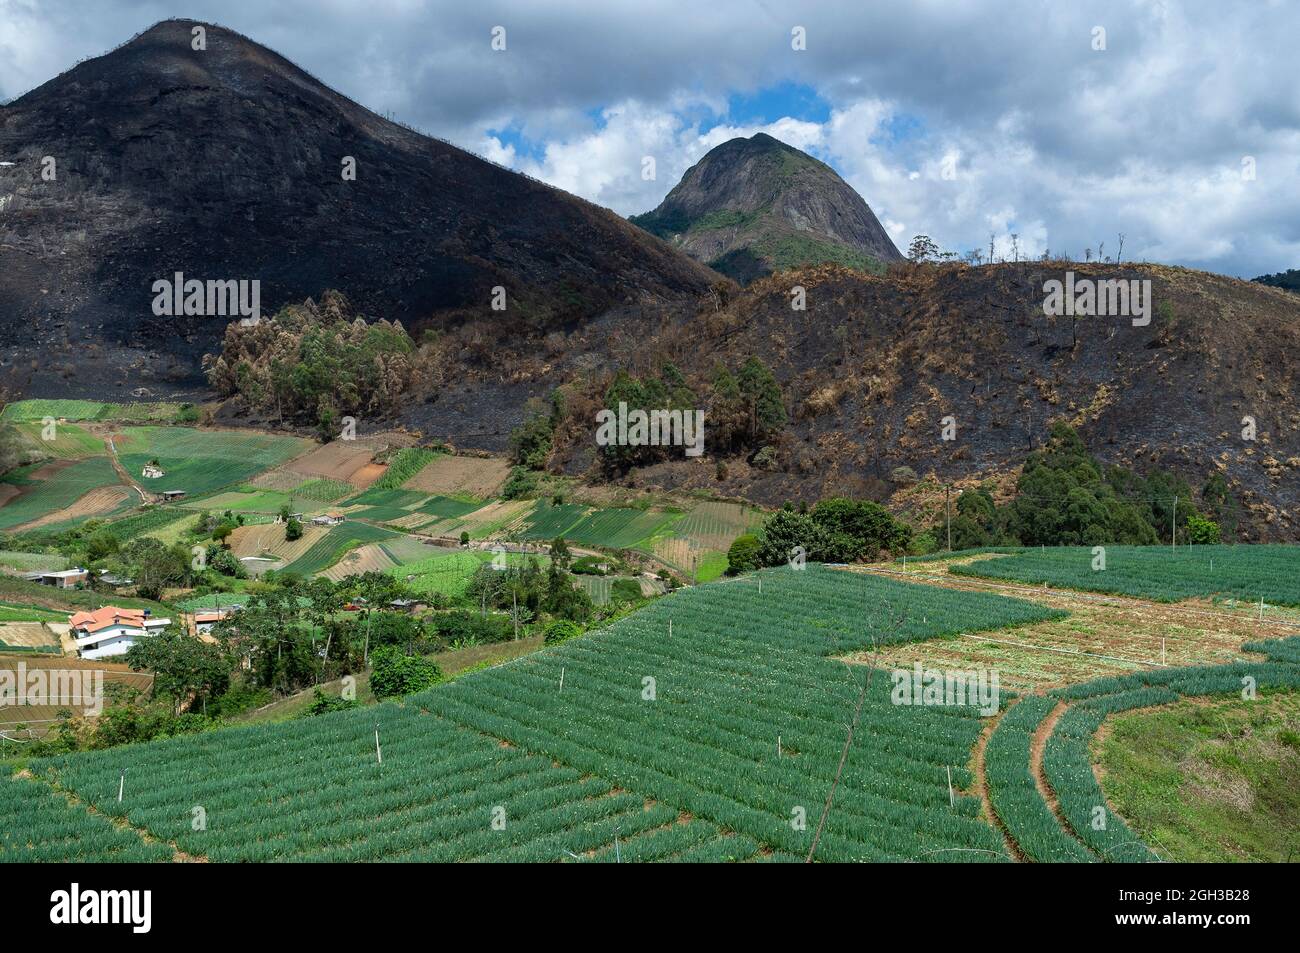 Agricultura de tala y quema utilizada en pequeñas granjas para la producción de hortalizas - recientemente quemadas tierras de fondo y varias plantaciones en primer plano. Foto de stock